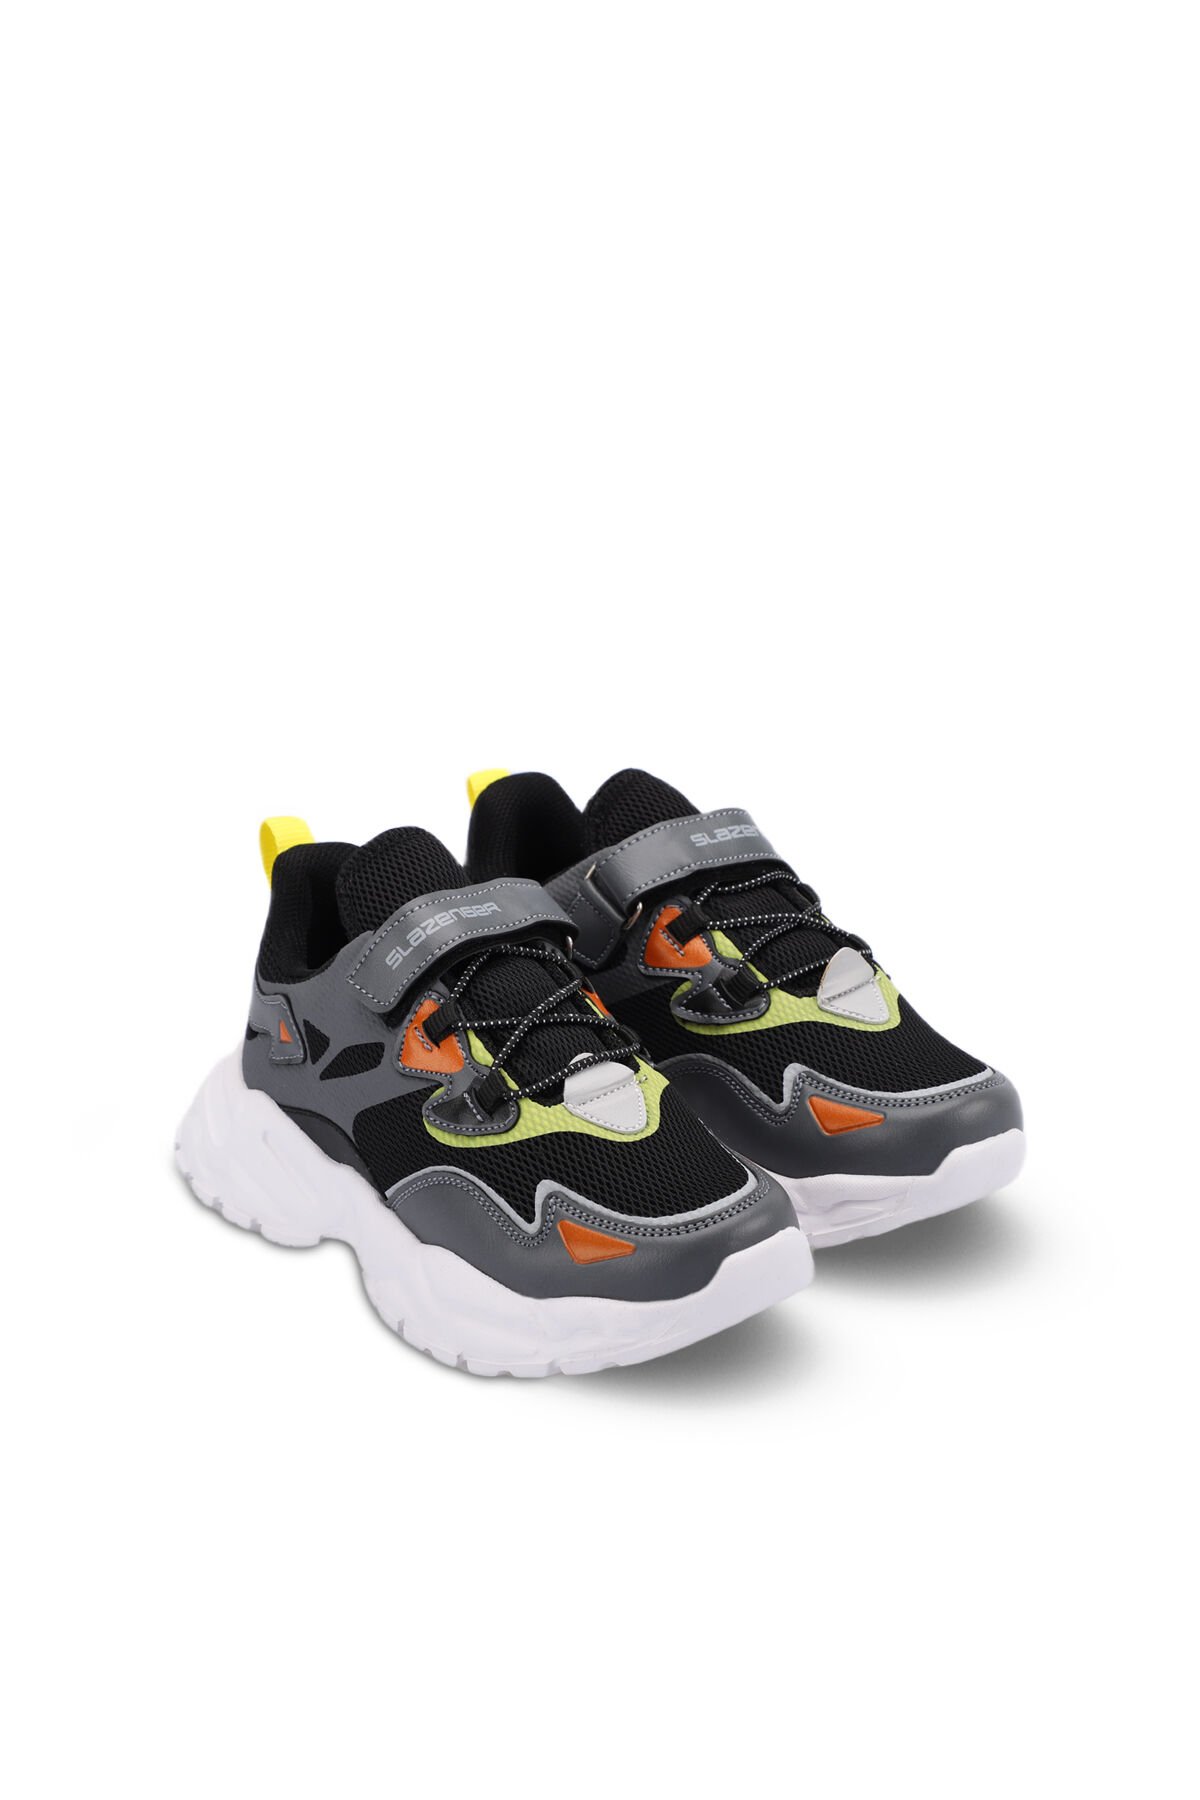 Slazenger KAJAL I Sneaker Erkek Çocuk Ayakkabı Koyu Gri / Siyah - Thumbnail